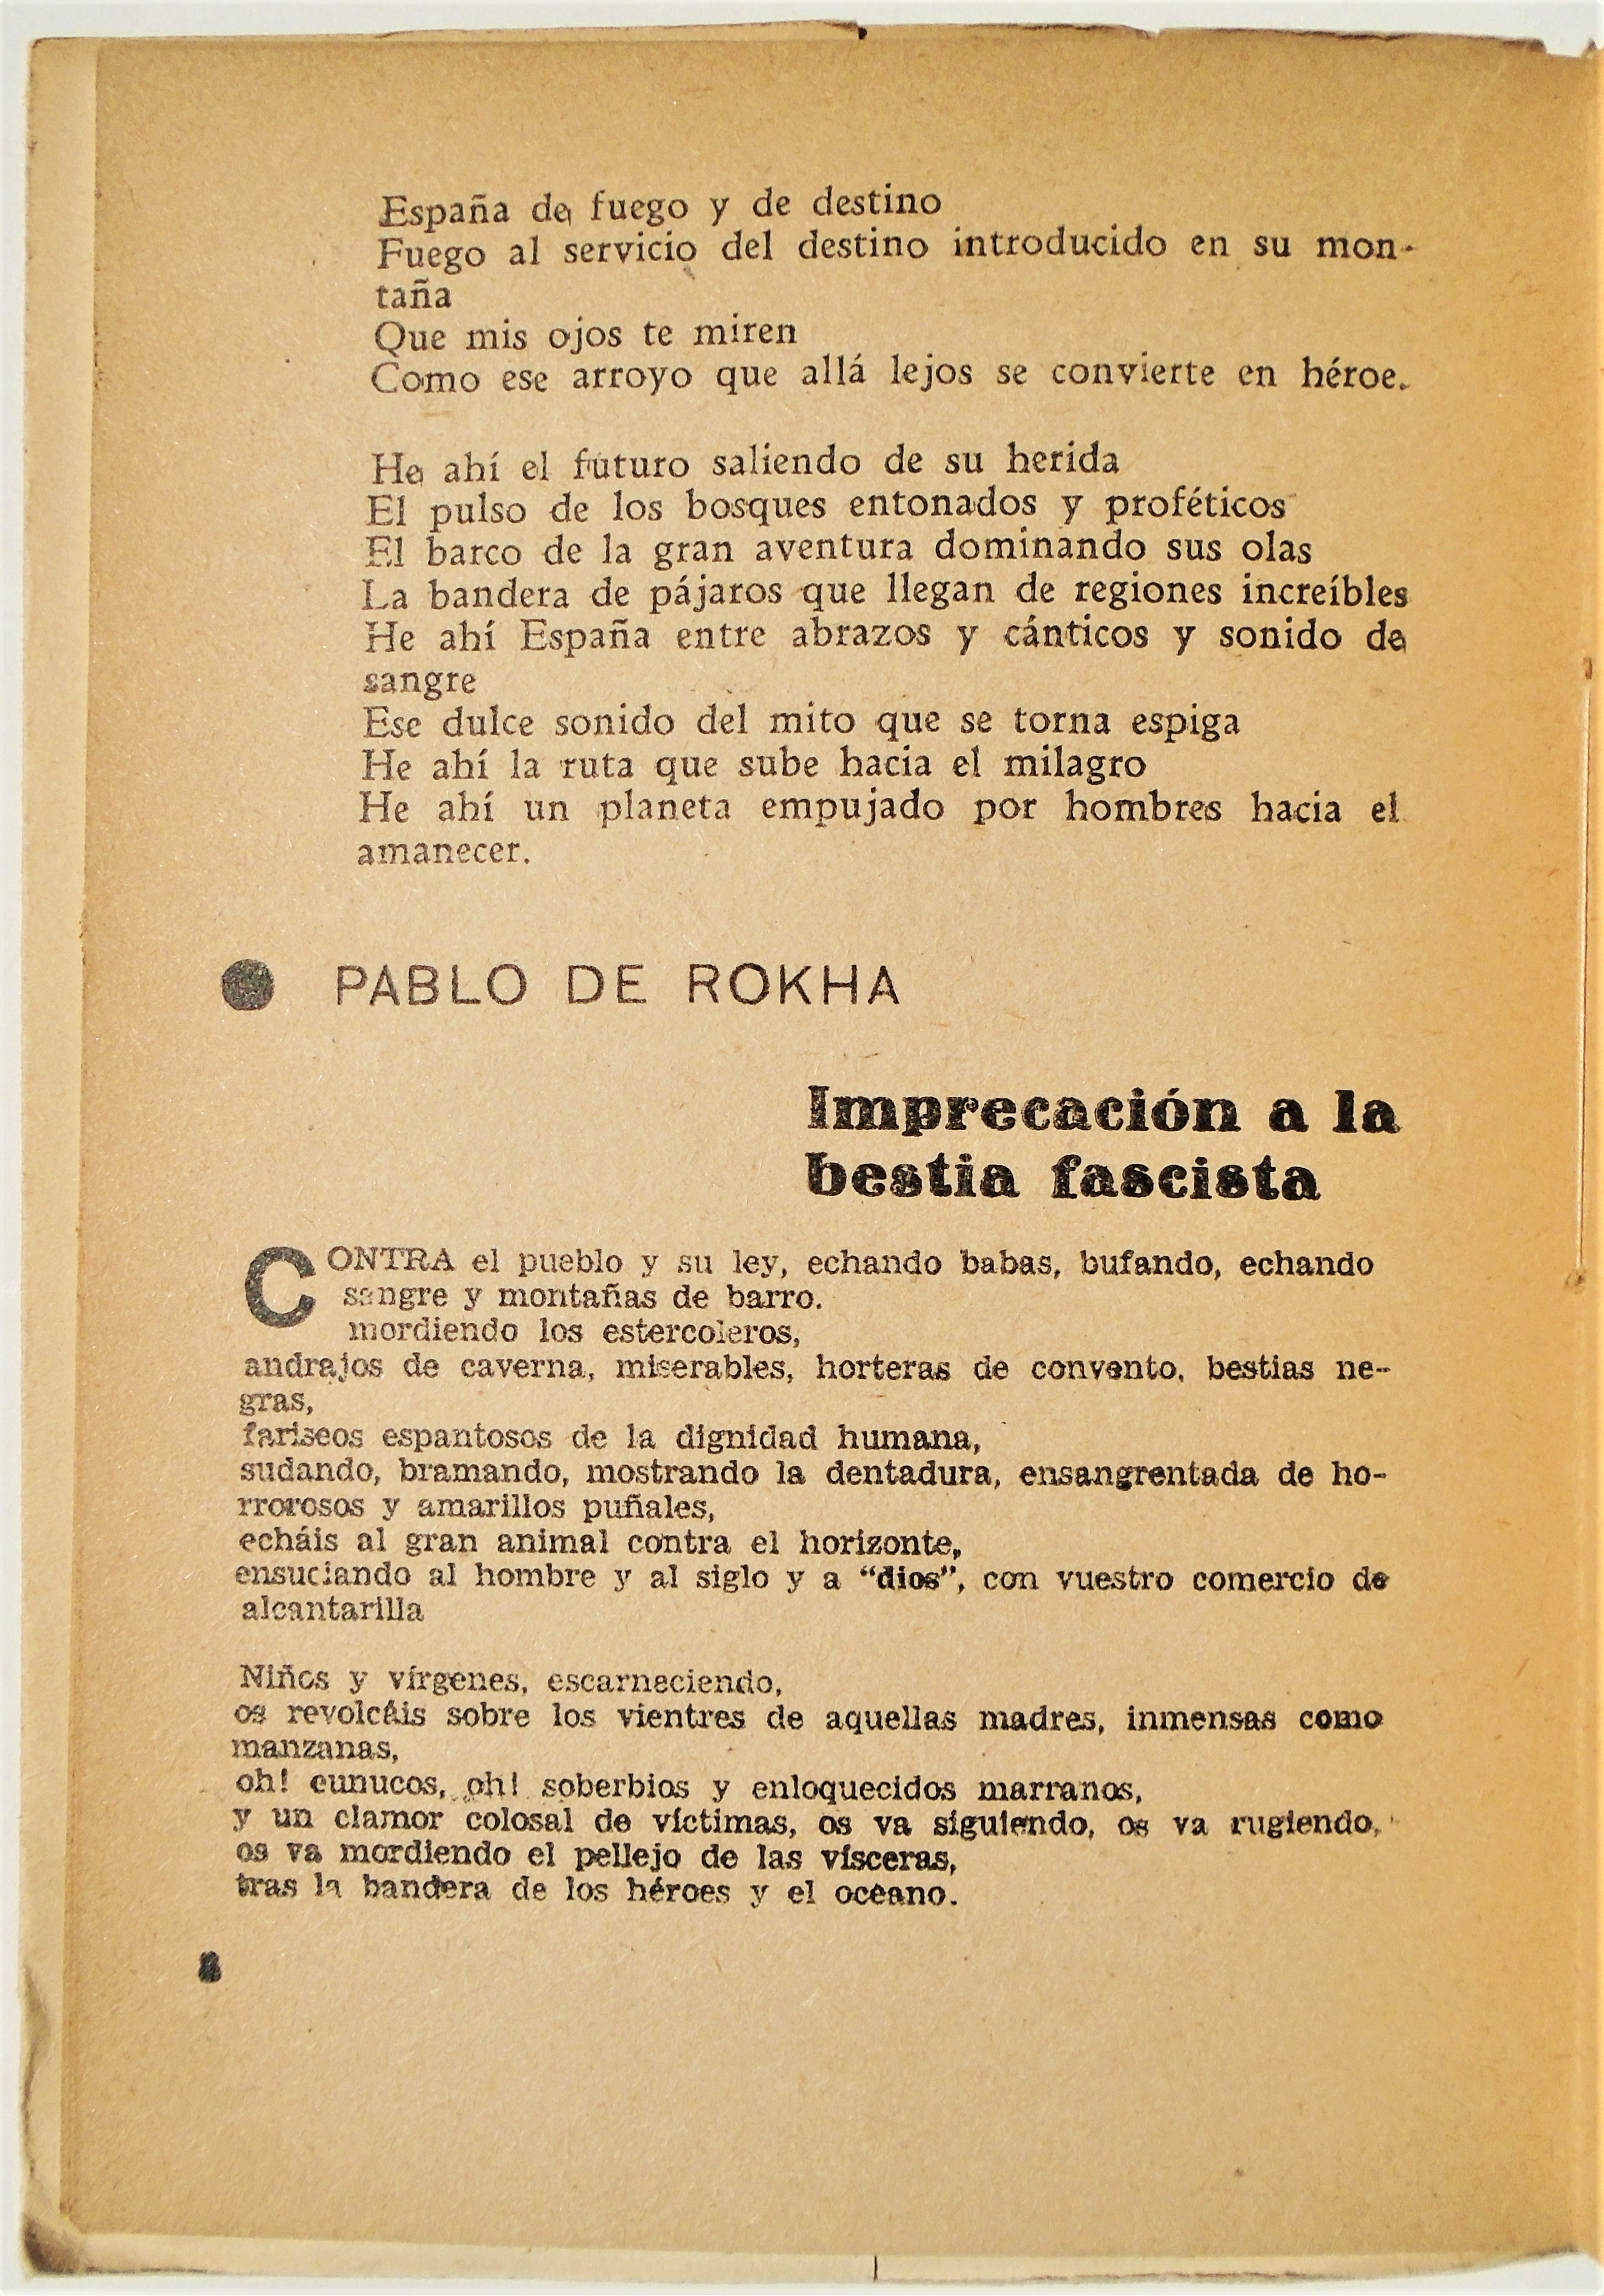 Madre España - Homenaje de los Poetas Chilenos